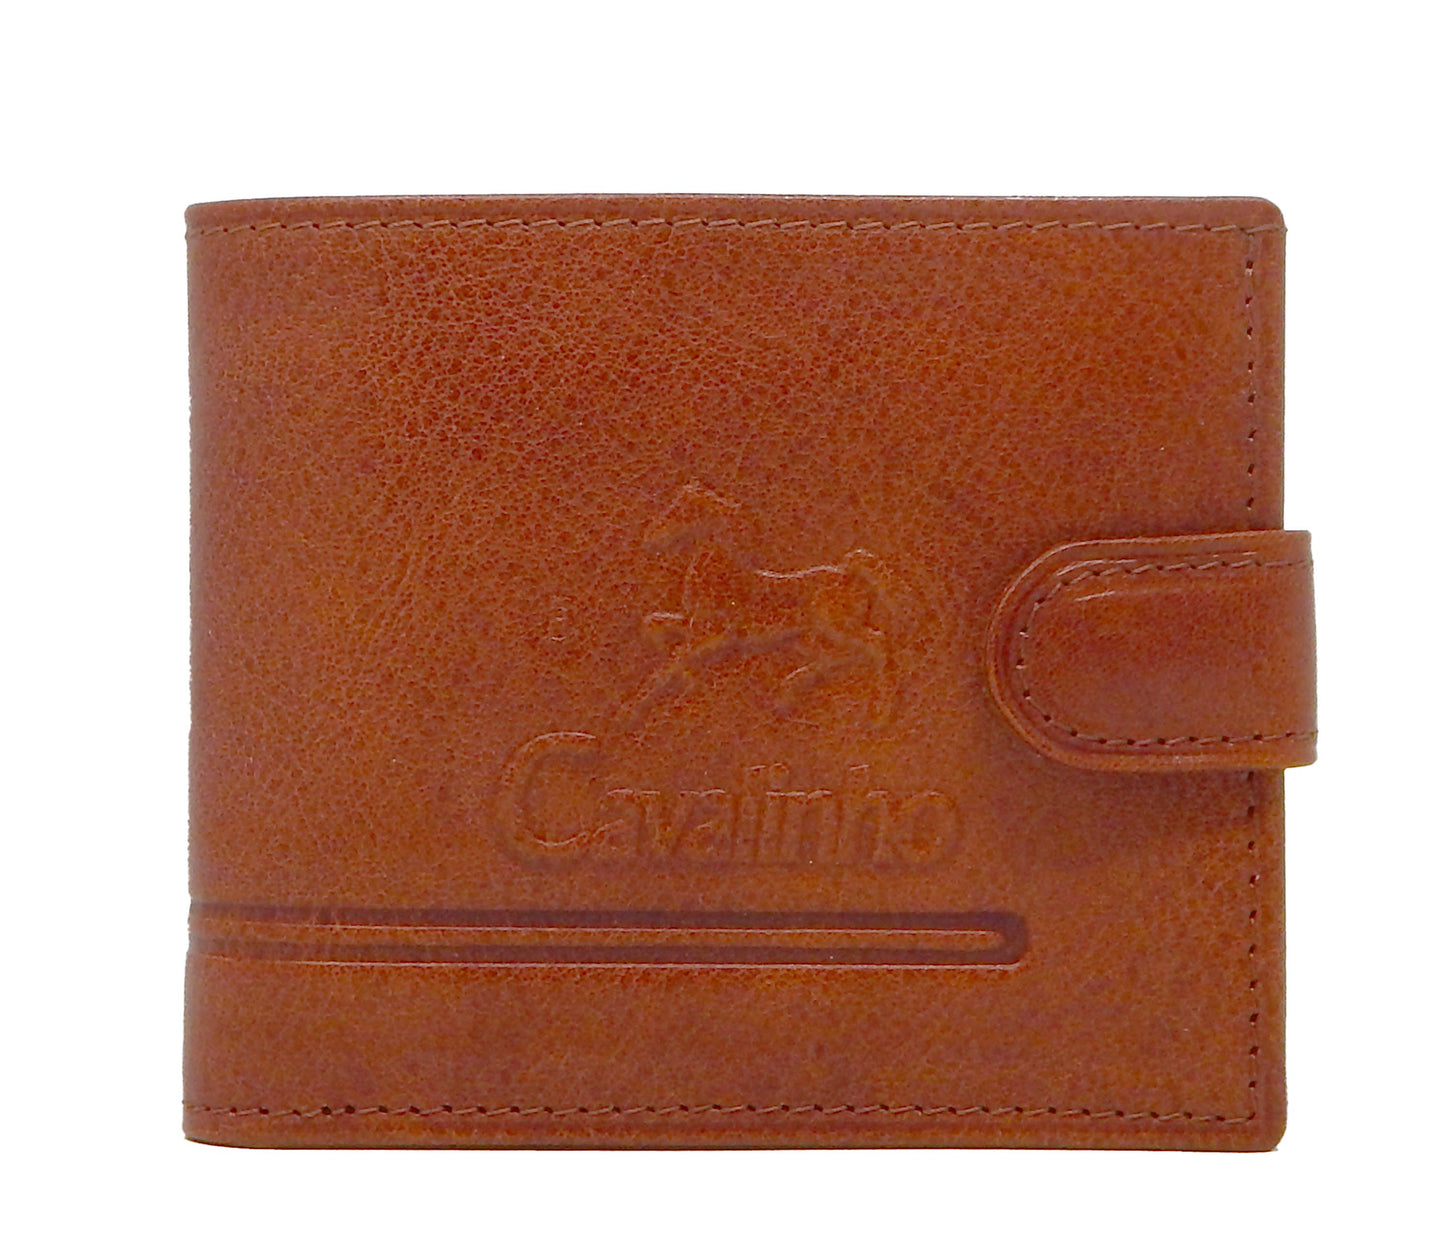 Cavalinho Men's Bifold Leather Wallet - SaddleBrown - 28160516.13.99_1